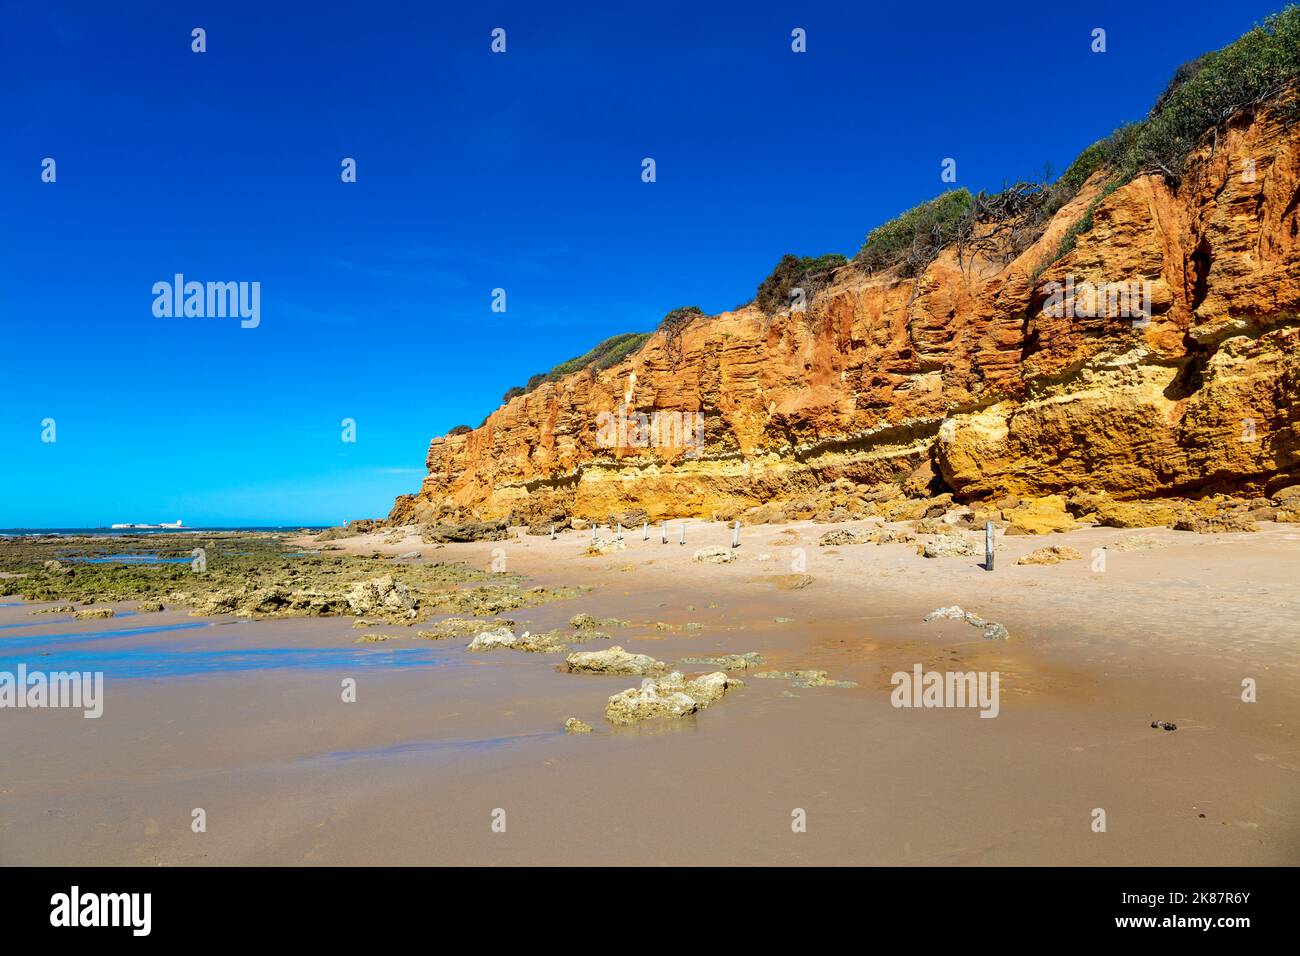 Orange rocks along Playa Sancti Petri, Costa de la Luz, Cadiz, Spain Stock Photo